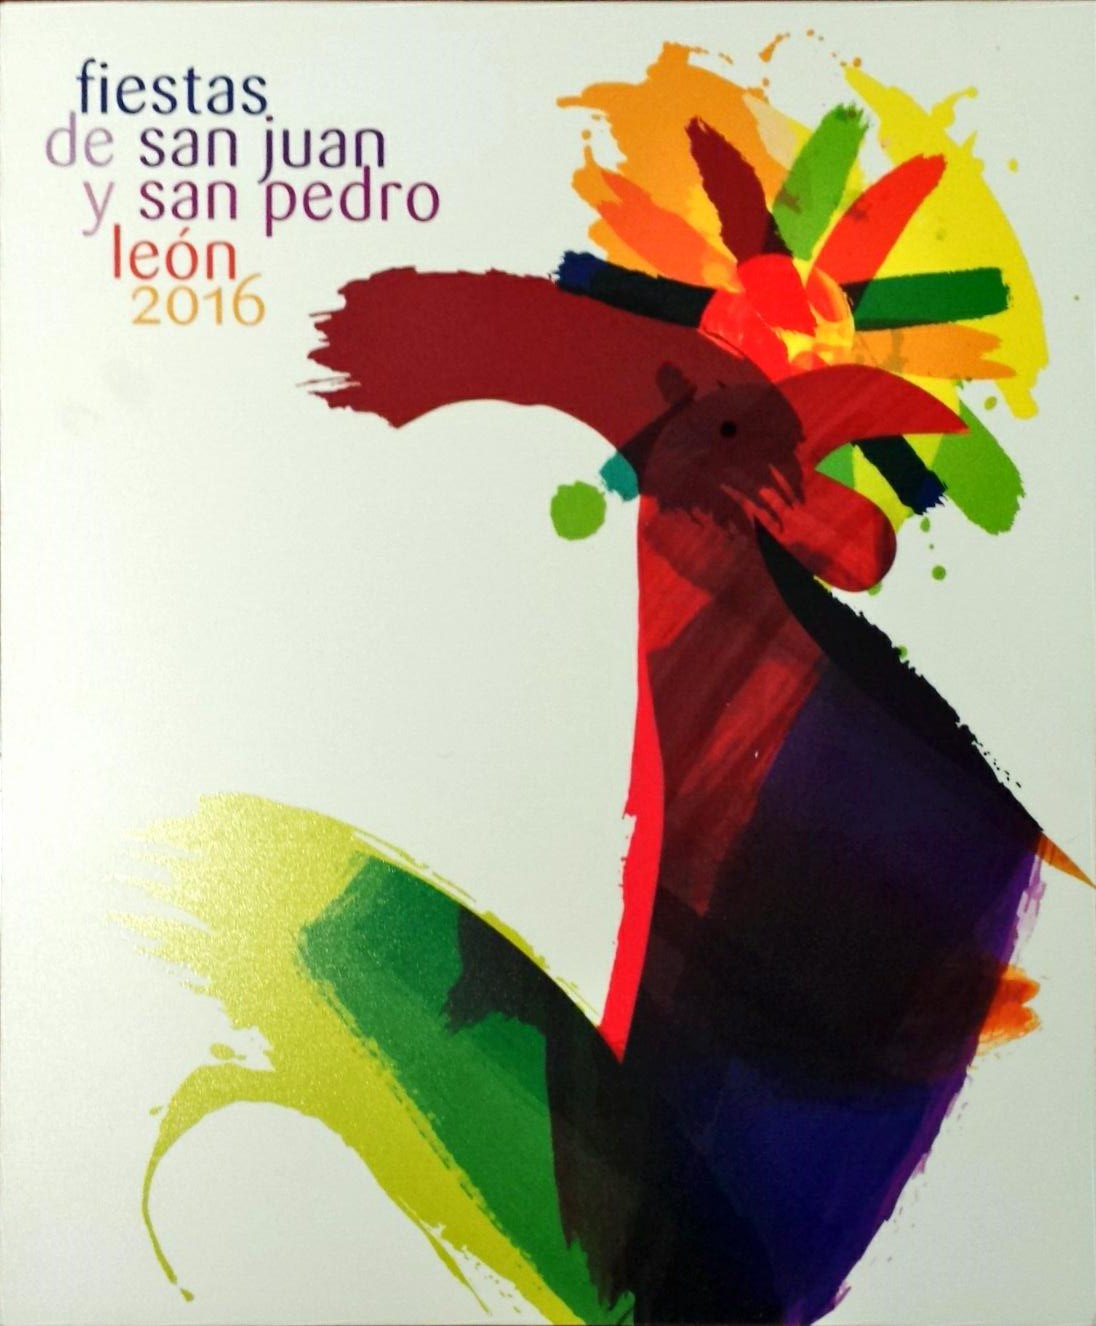 Fiestas de San Juan y San Pedro 2016 en León. Programa Oficial 1